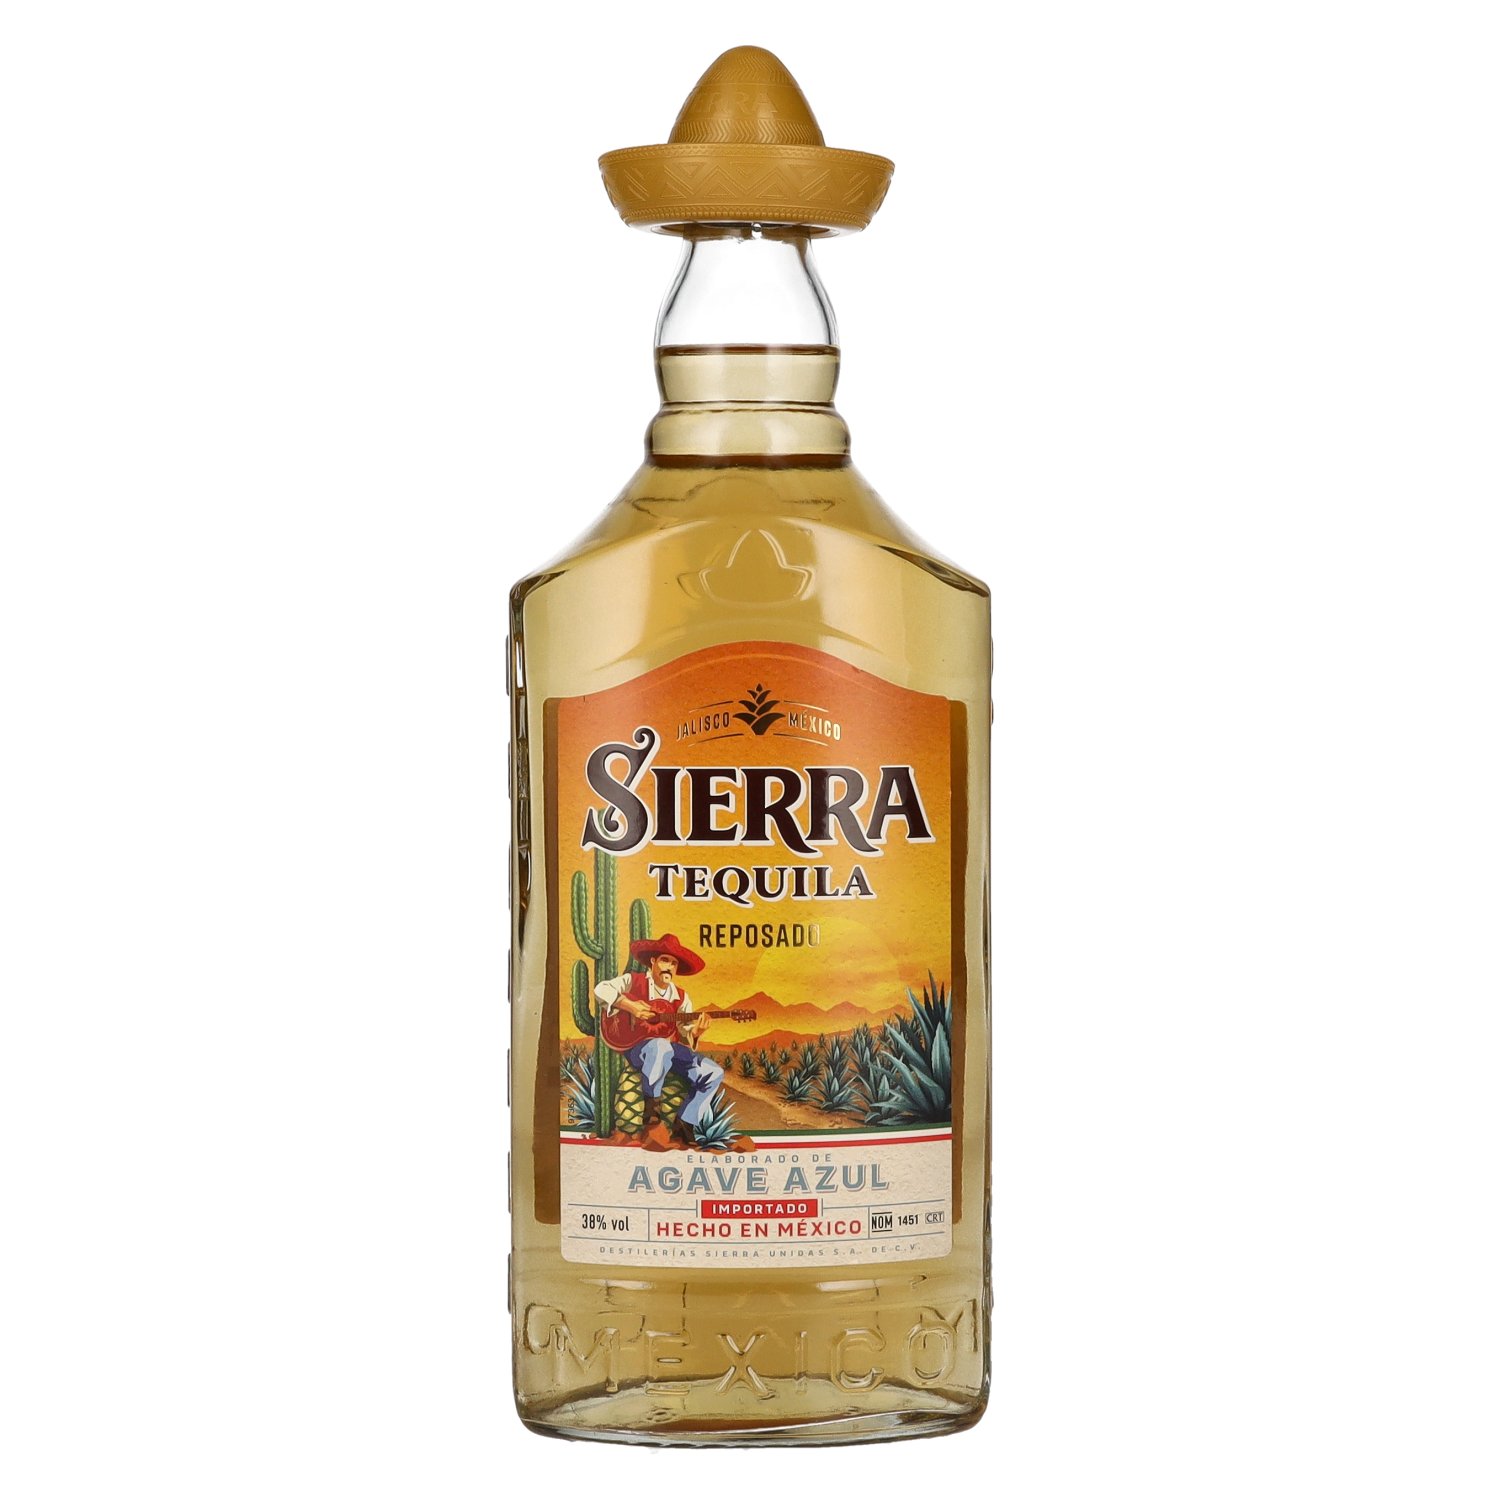 Sierra Tequila Vol. 0,7l delicando 38% - Reposado